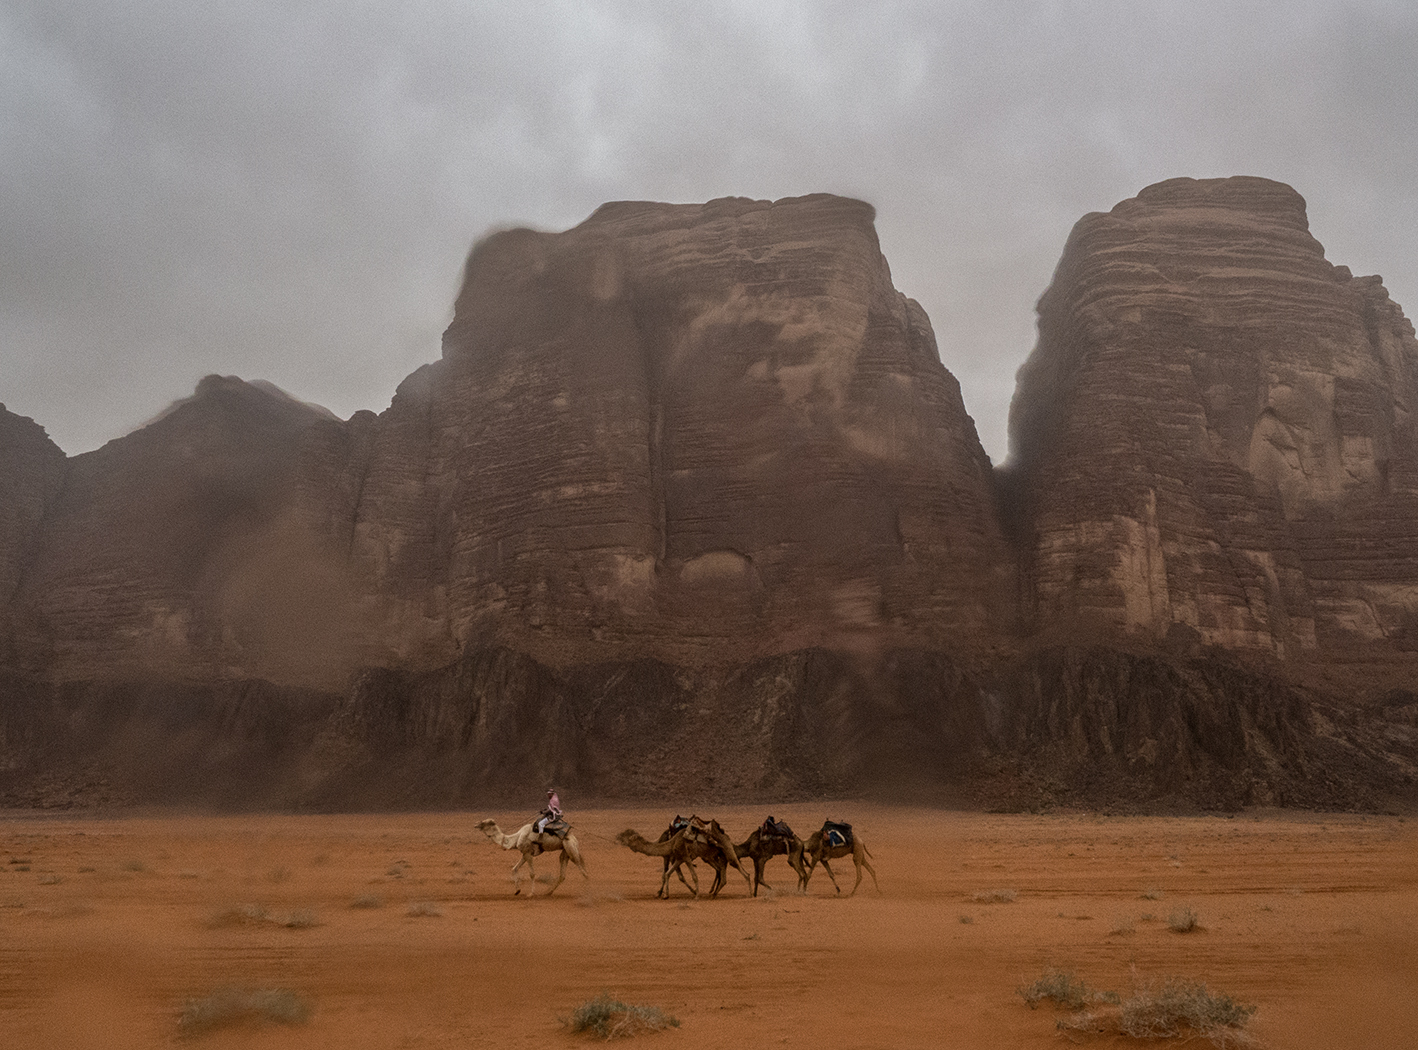 Camel train in Wadi Rum, Jordan